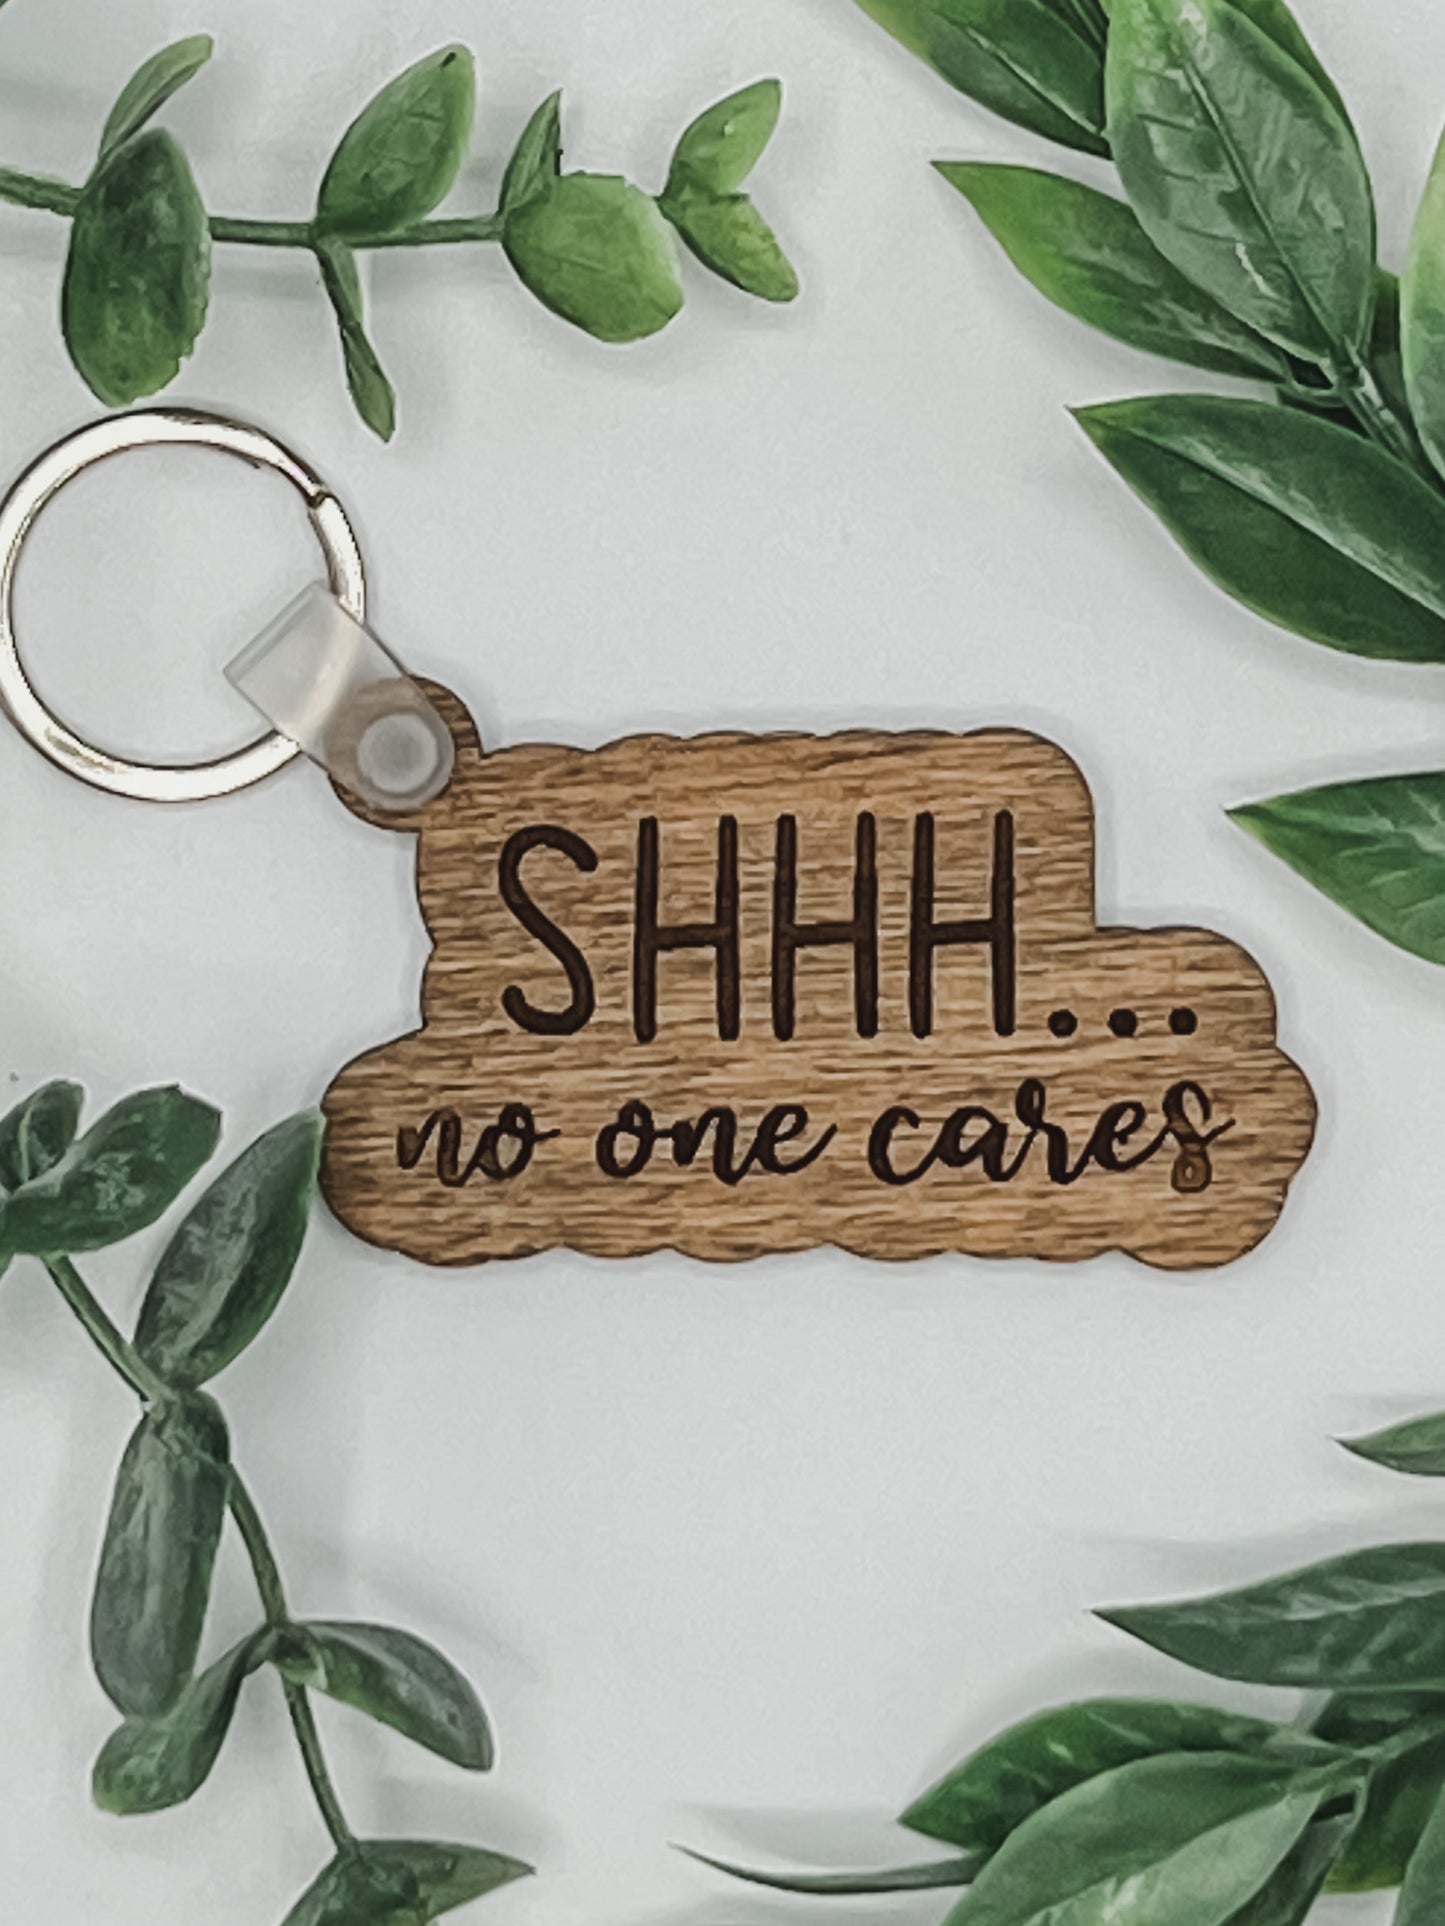 Shhh… no one cares